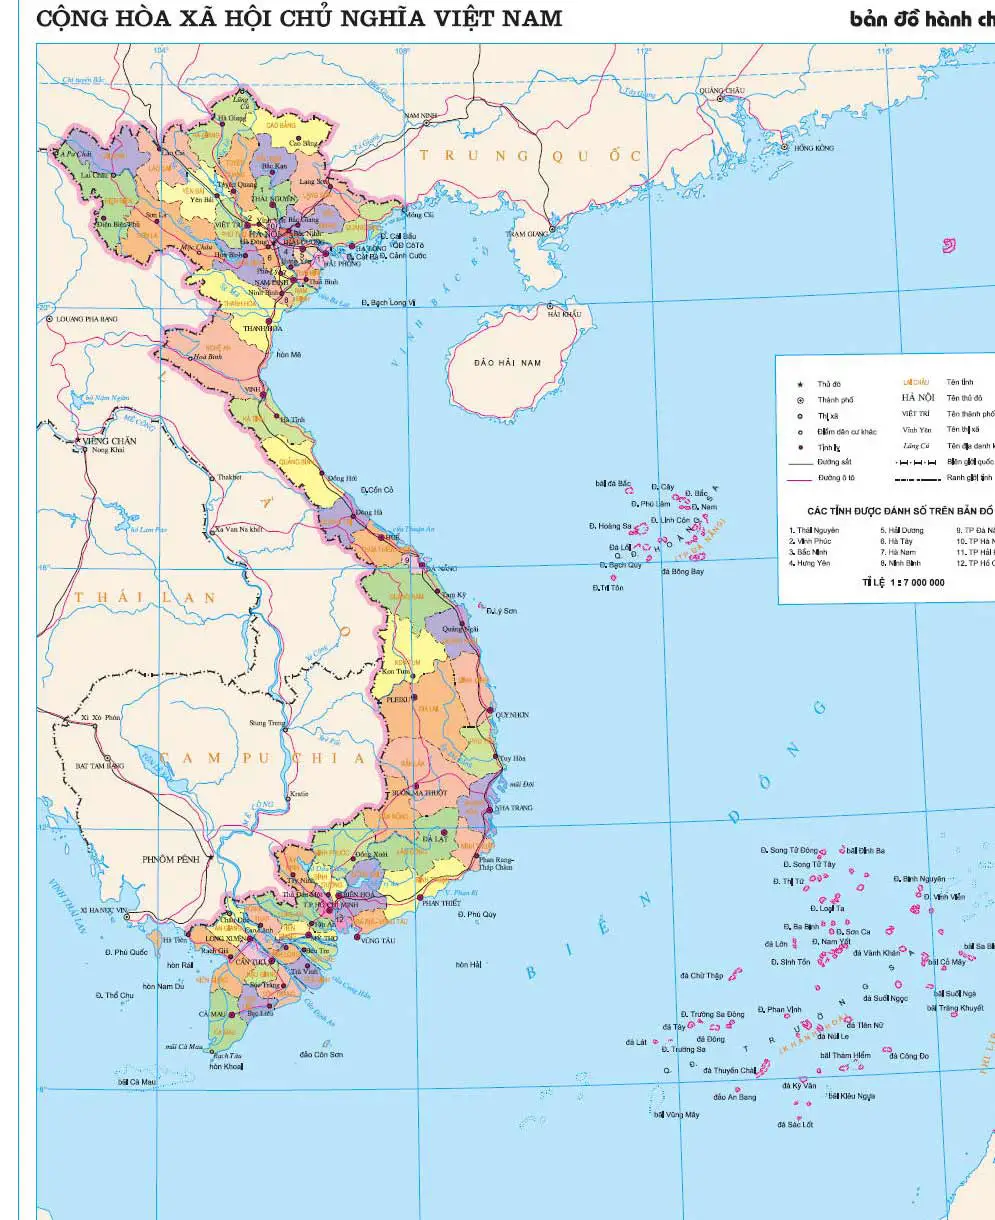 Vietnam • Mapsof.net